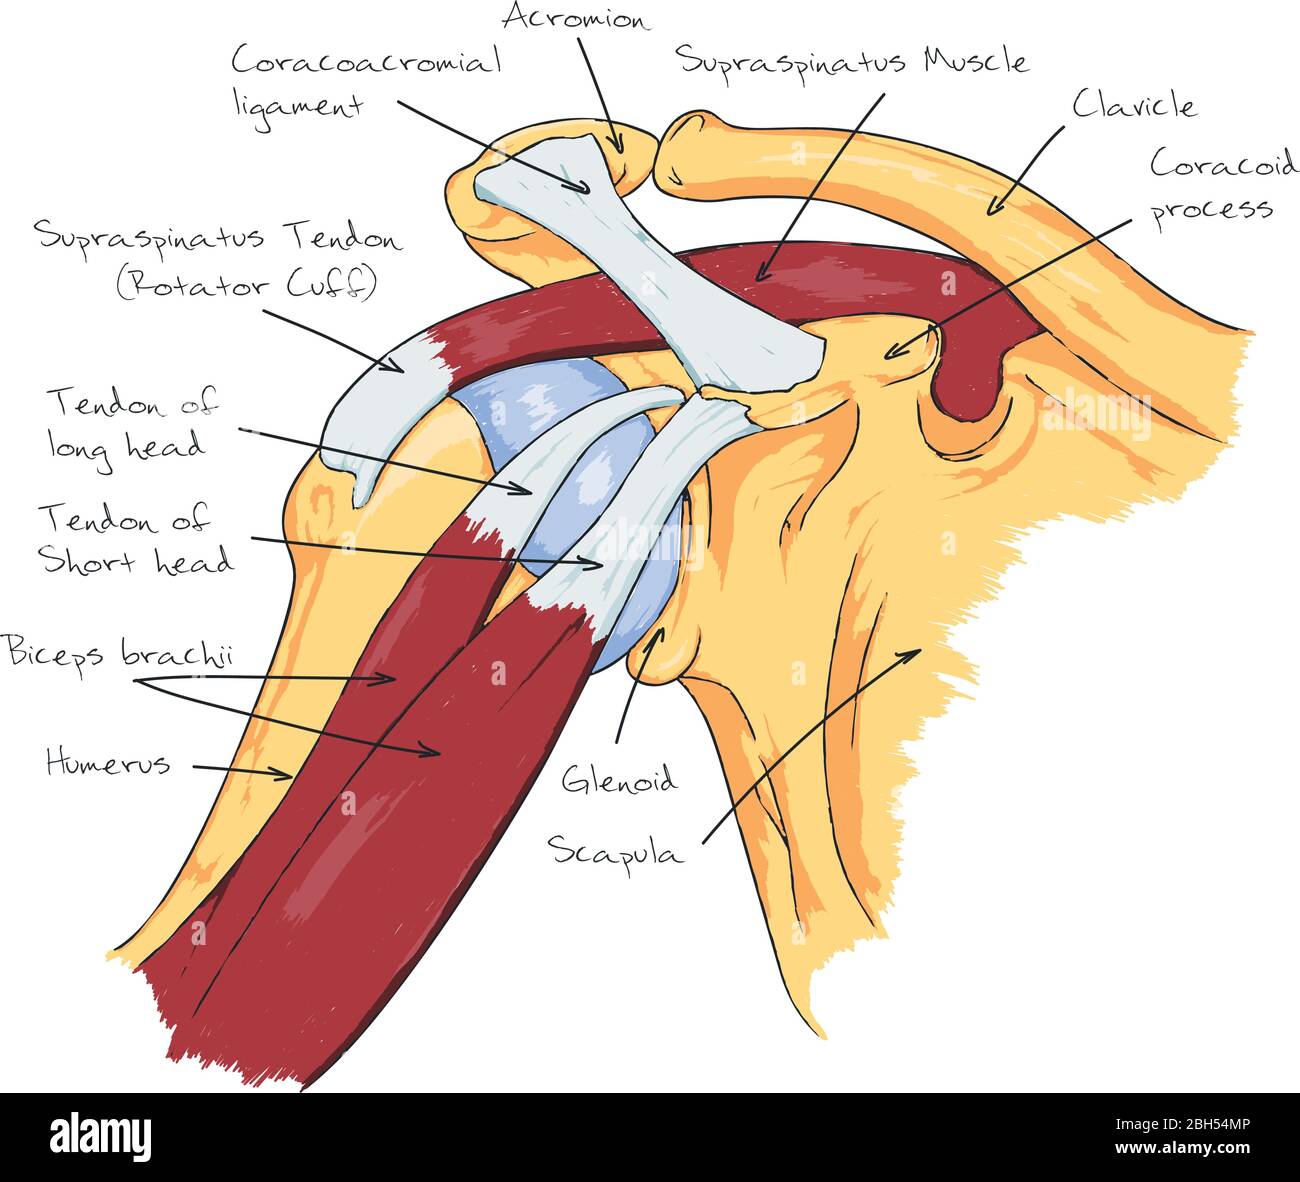 Anatomie Schéma De Lépaule Douleur De Lépaule Image Vectorielle Stock Alamy 0169